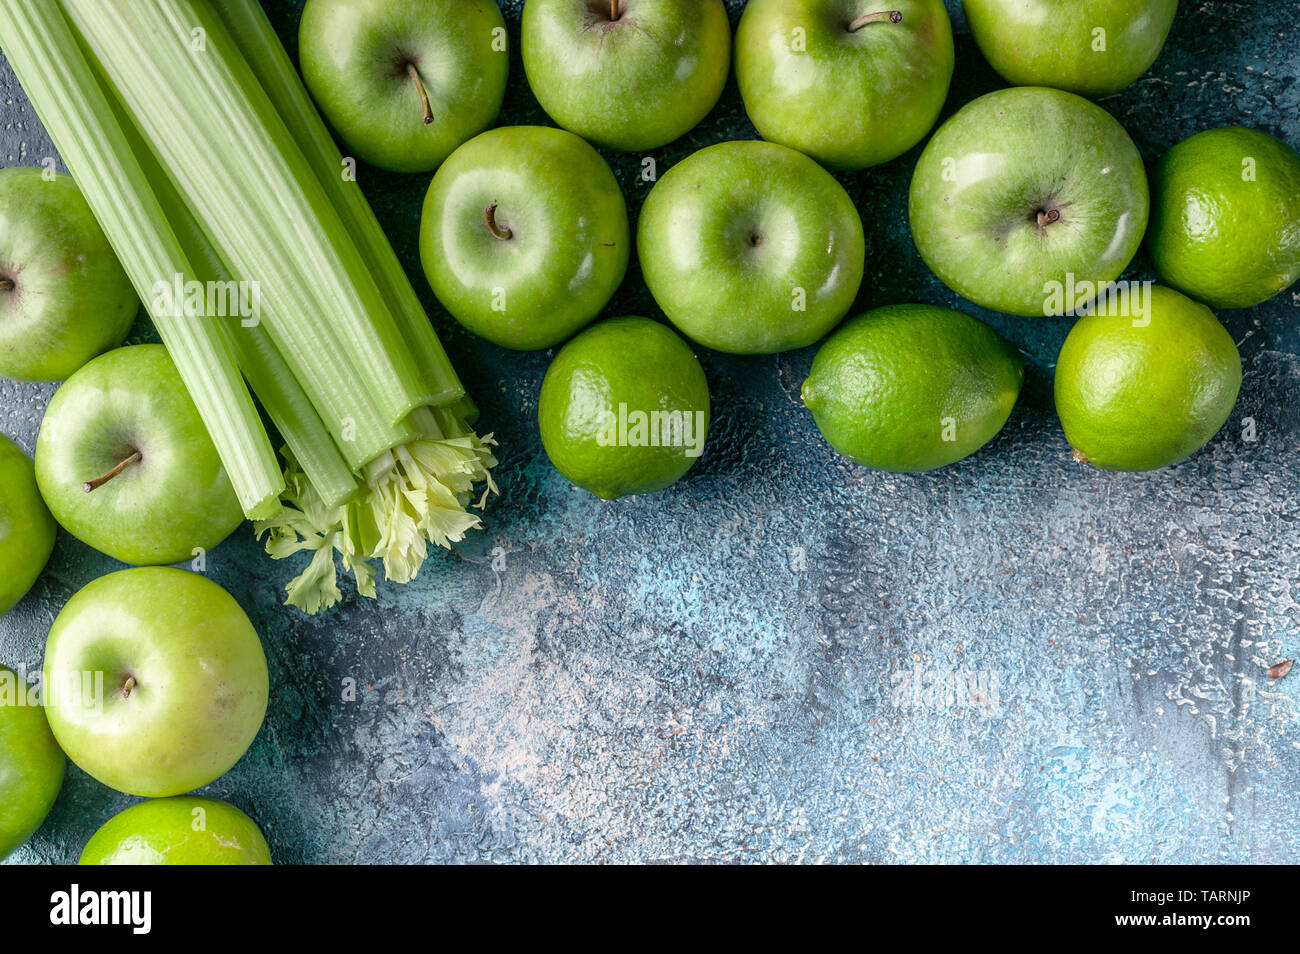 La pomme verte, le céleri et les limes sur un fond en béton. Programme de  désintoxication, de régime, la perte de poids. Mise à plat de sa  composition. Vue d'en haut Photo